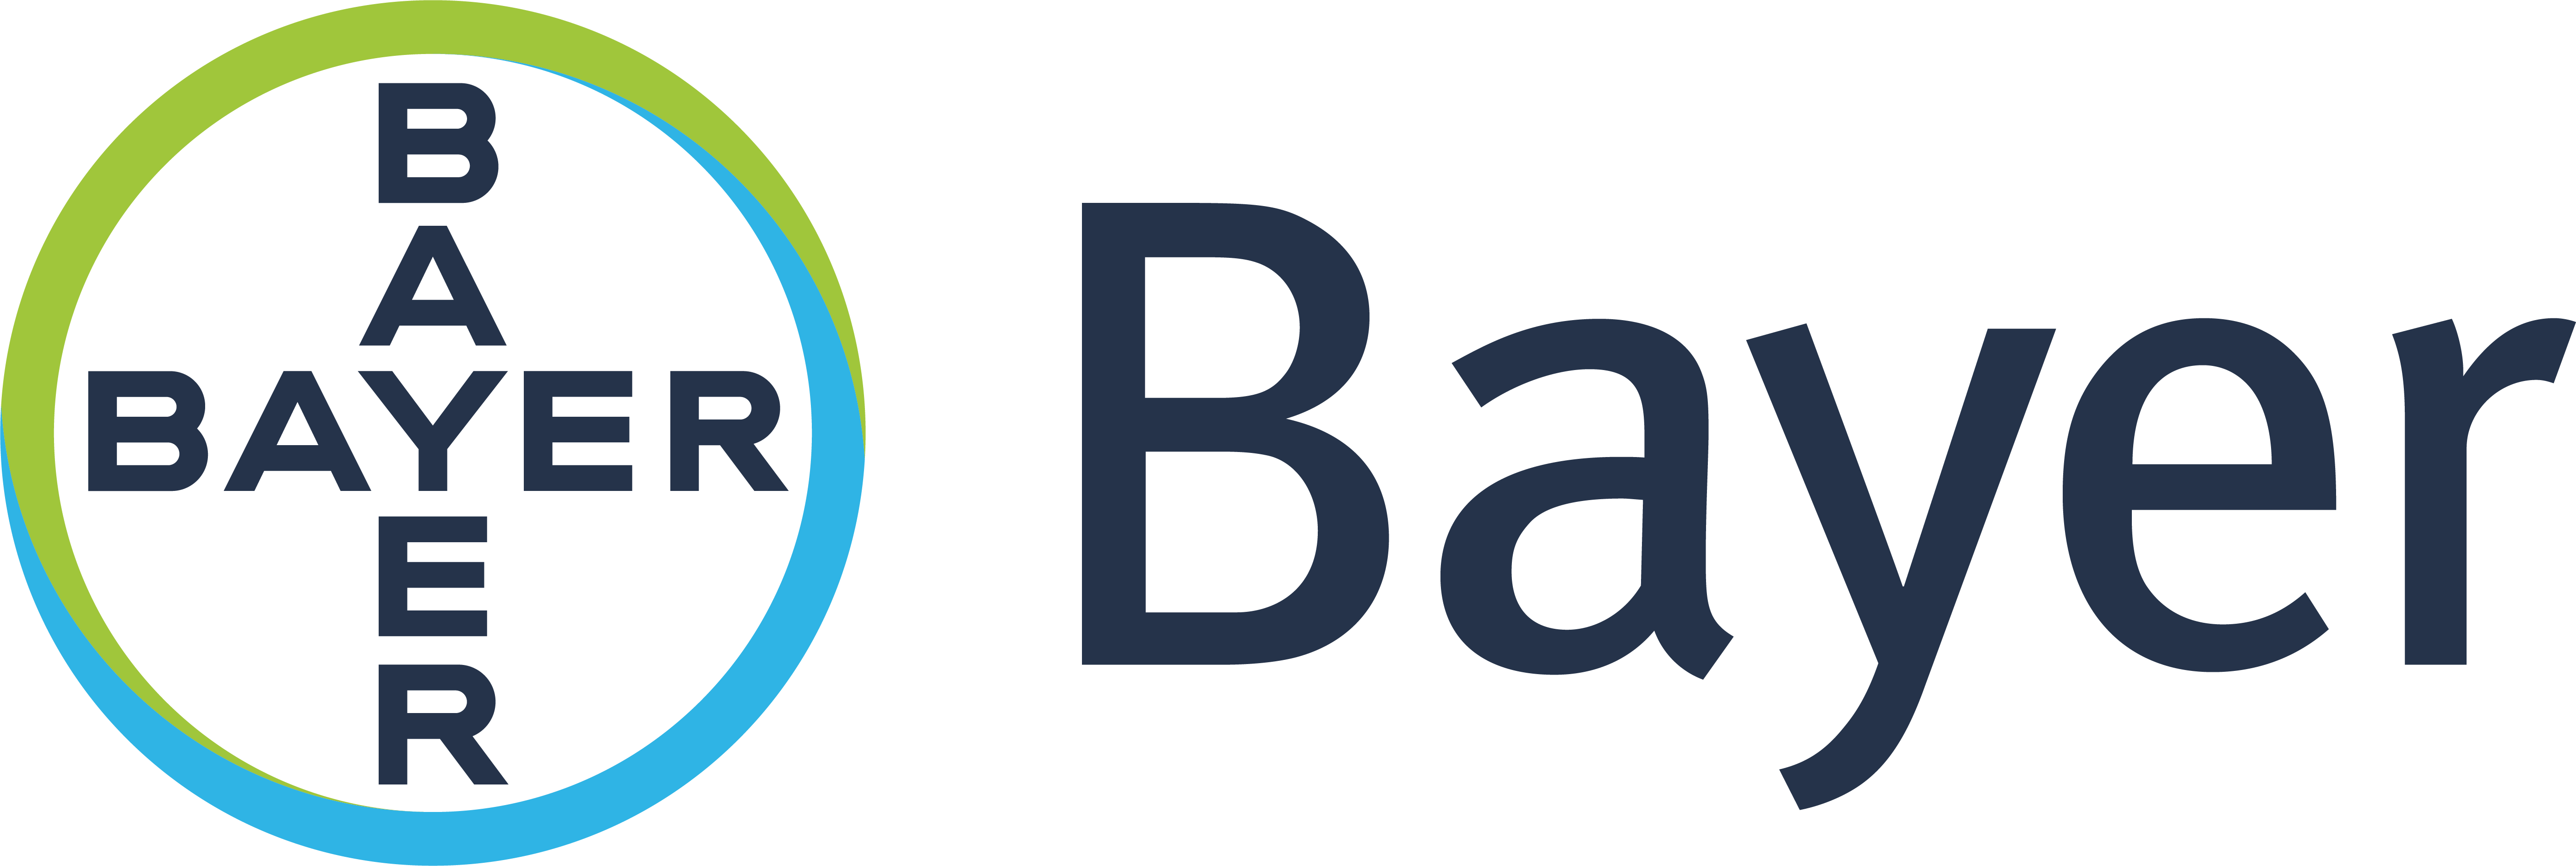 Bayer CropScience – генеральный спонсор ведущего события в яблочном бизнесе Украины!